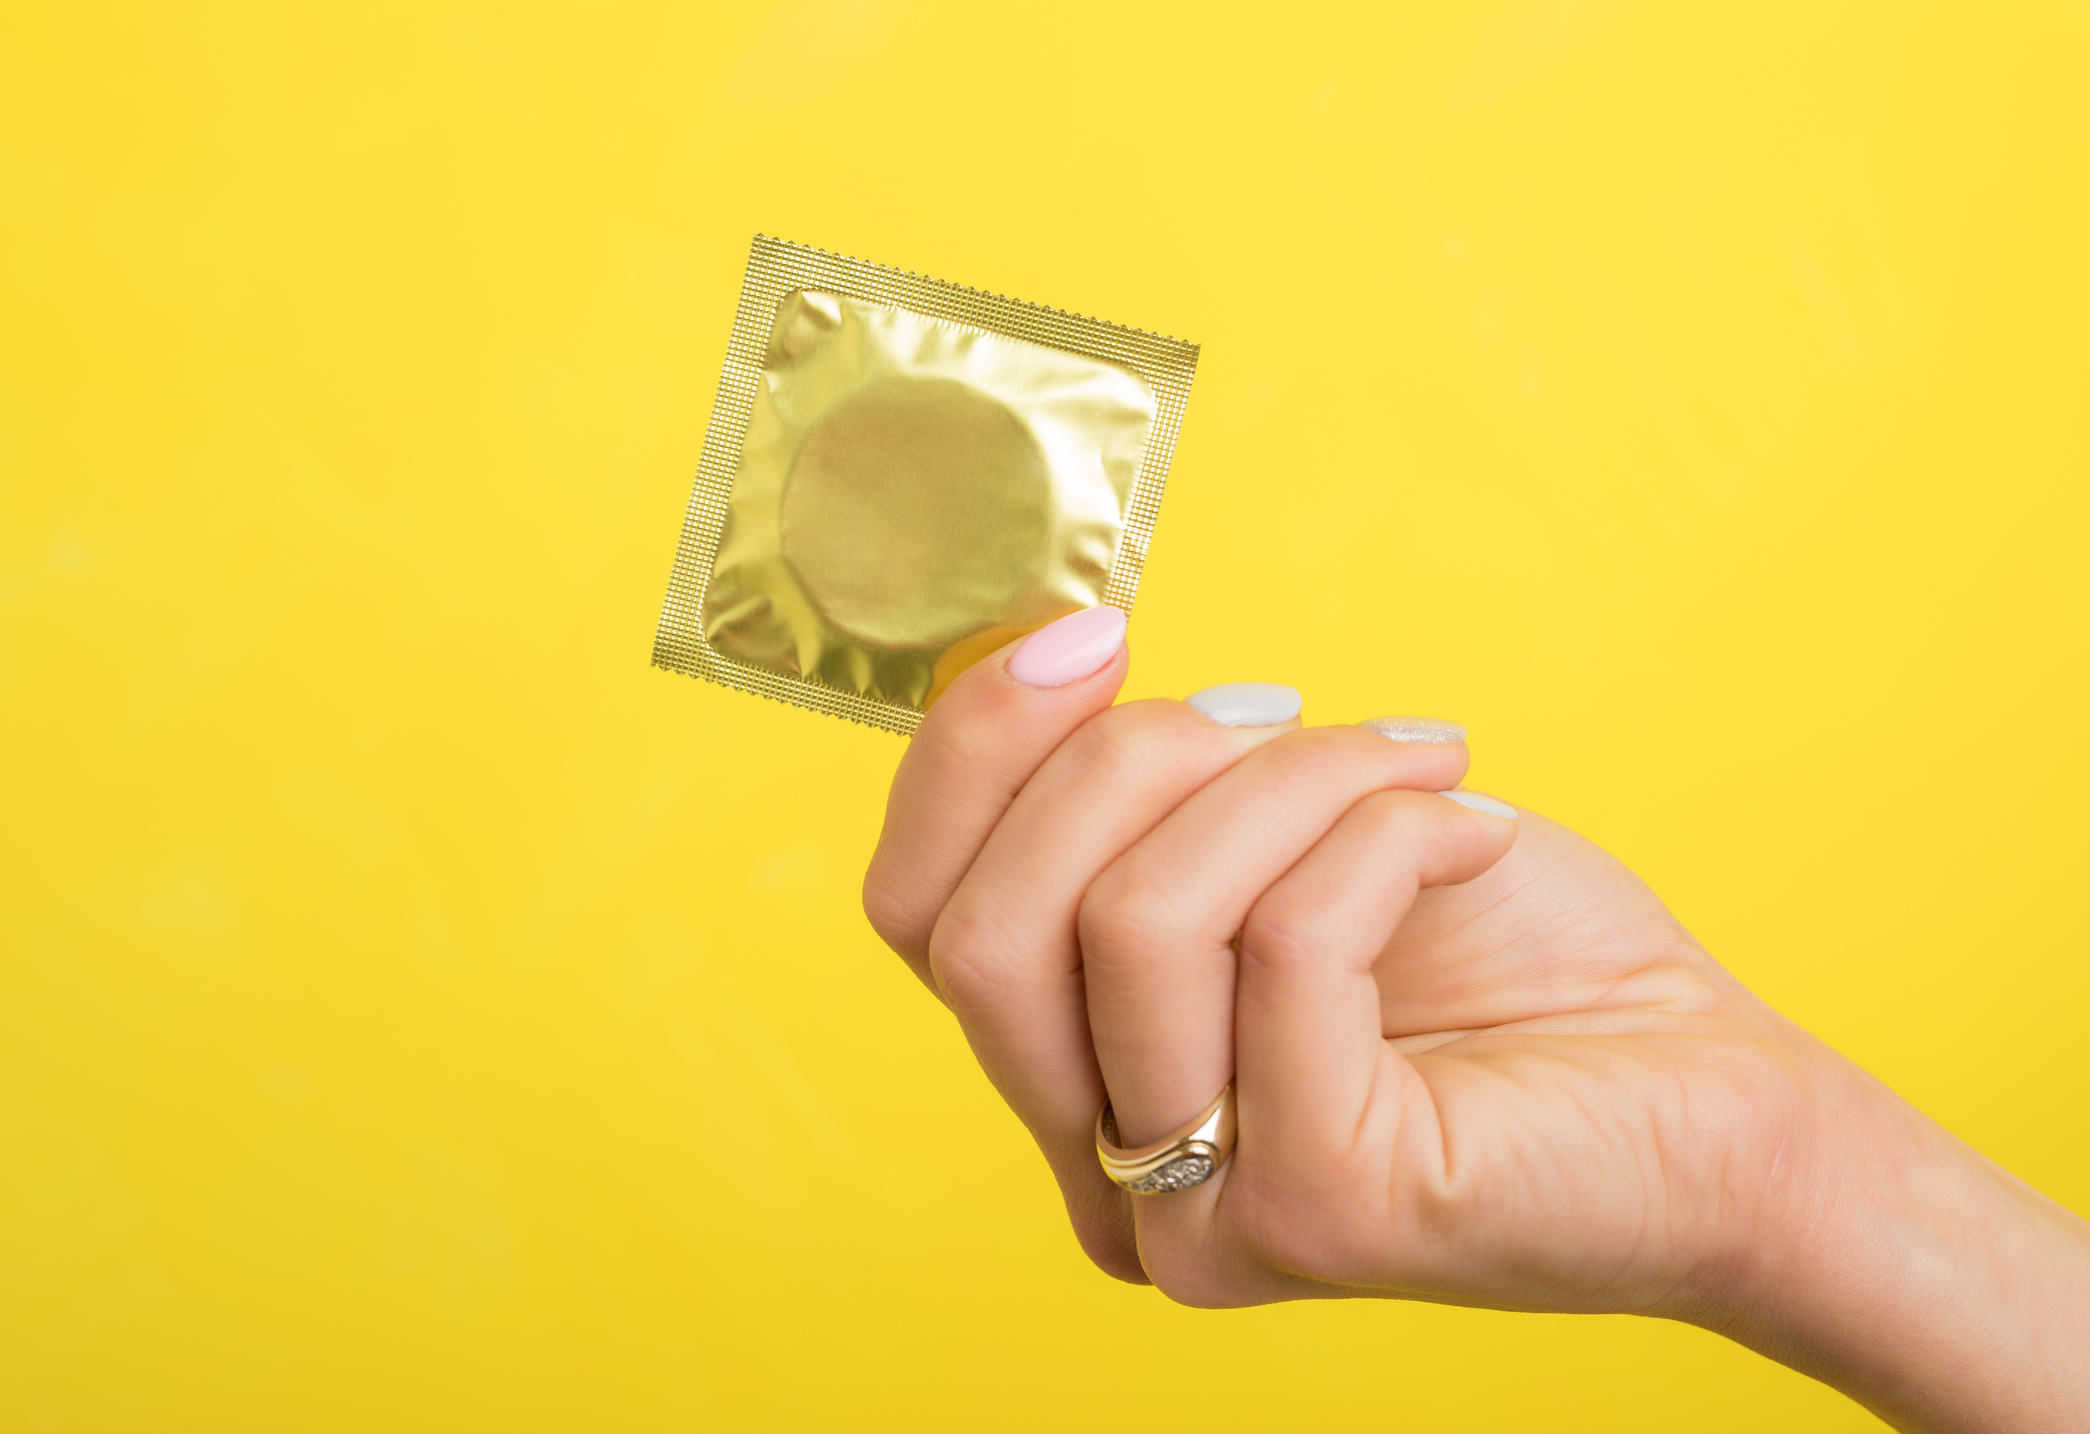 Condom.